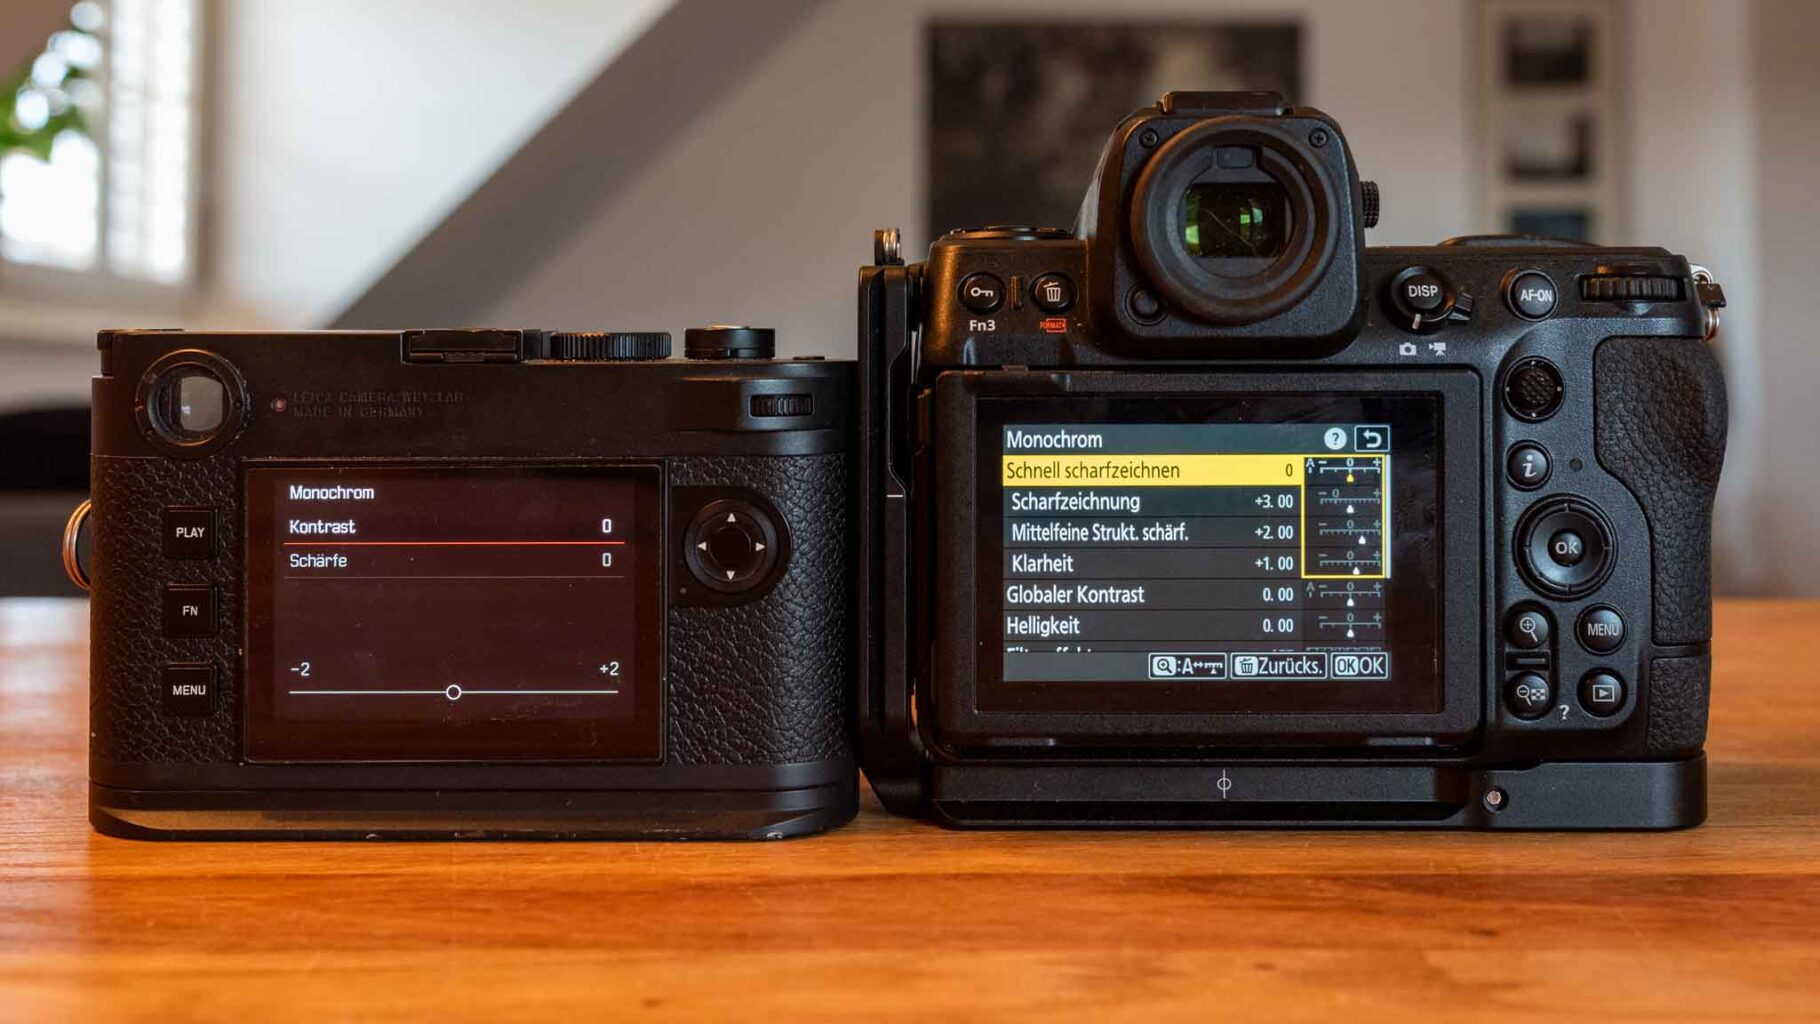 Nikon Monochrome - Kamera auf Schwarzweiss einstellen [2:1]